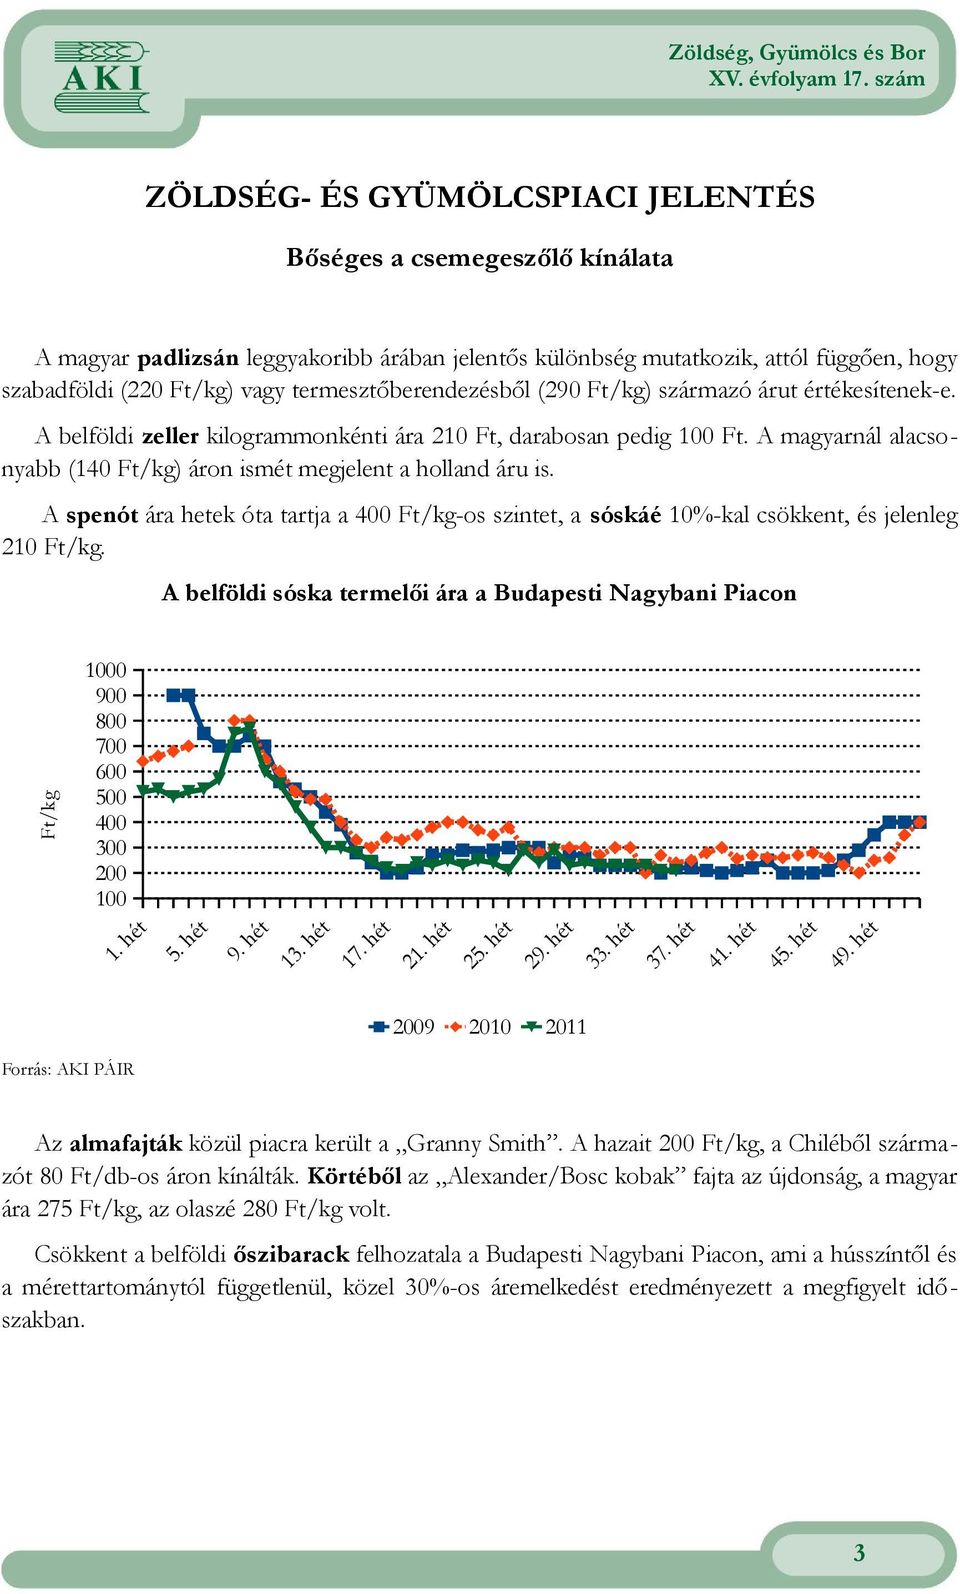 A magyarnál alacsonyabb (14 Ft/kg) áron ismét megjelent a holland áru is. A spenót ára hetek óta tartja a 4 Ft/kg-os szintet, a sóskáé 1%-kal csökkent, és jelenleg 21 Ft/kg.